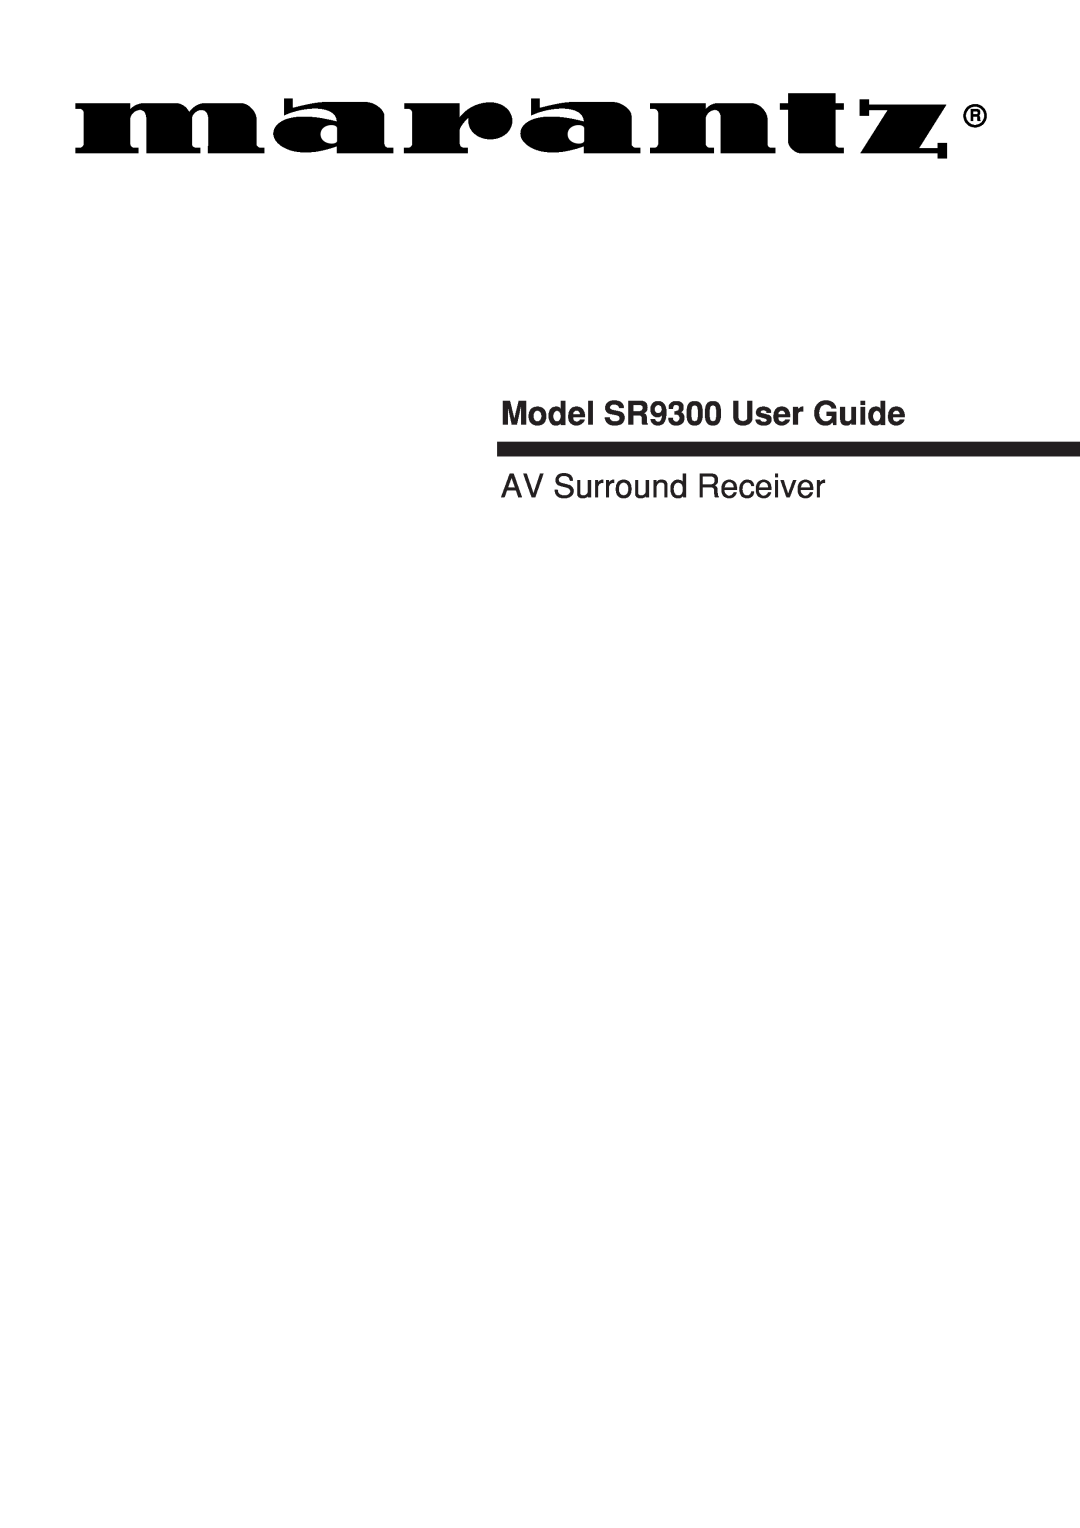 Marantz manual Model SR9300 User Guide, AV Surround Receiver 